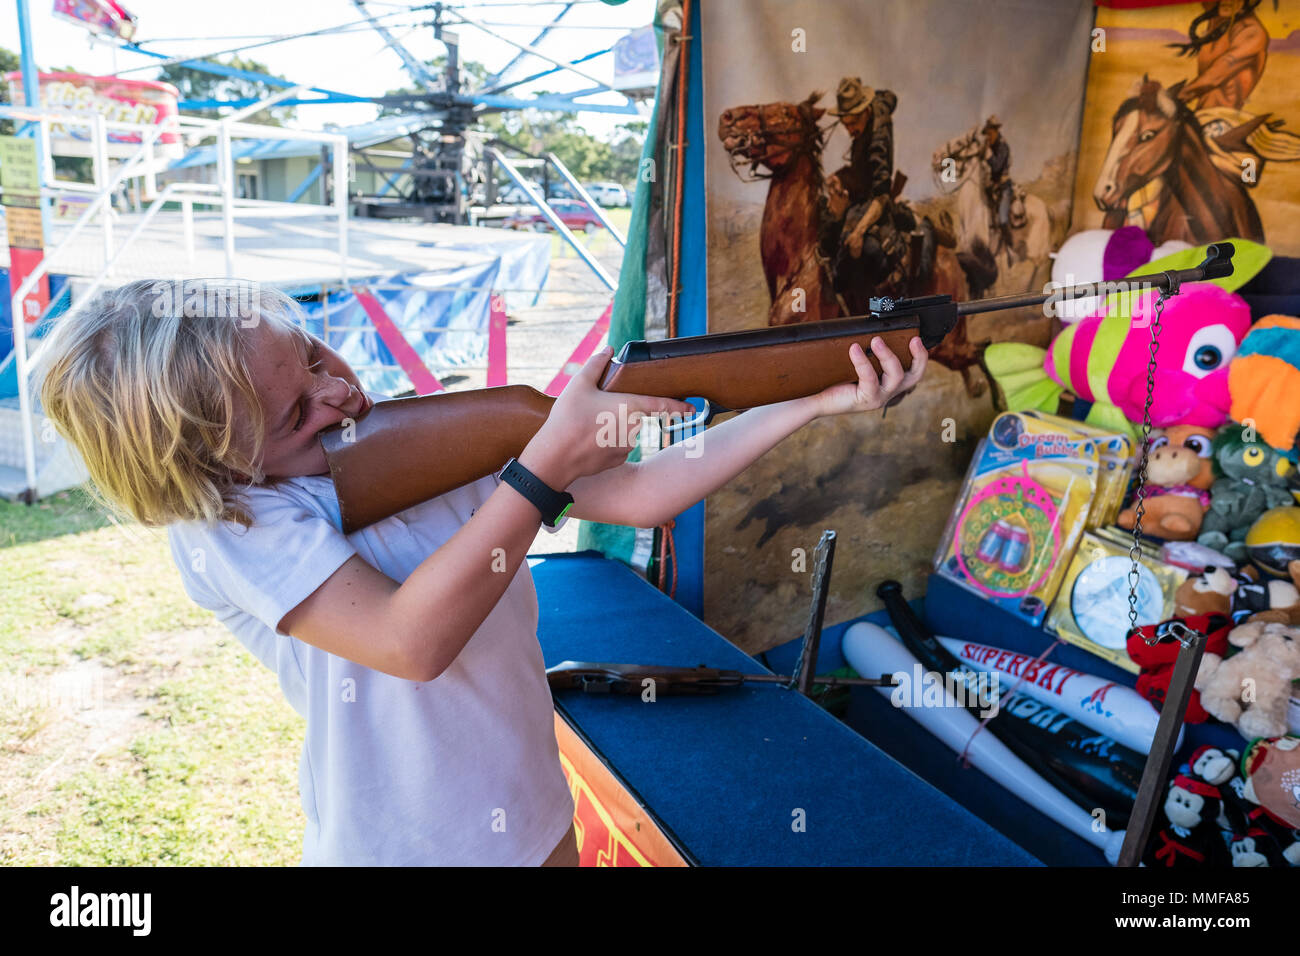 A boy shoots a gun at metal duck in a sideshow at a fair. Stock Photo